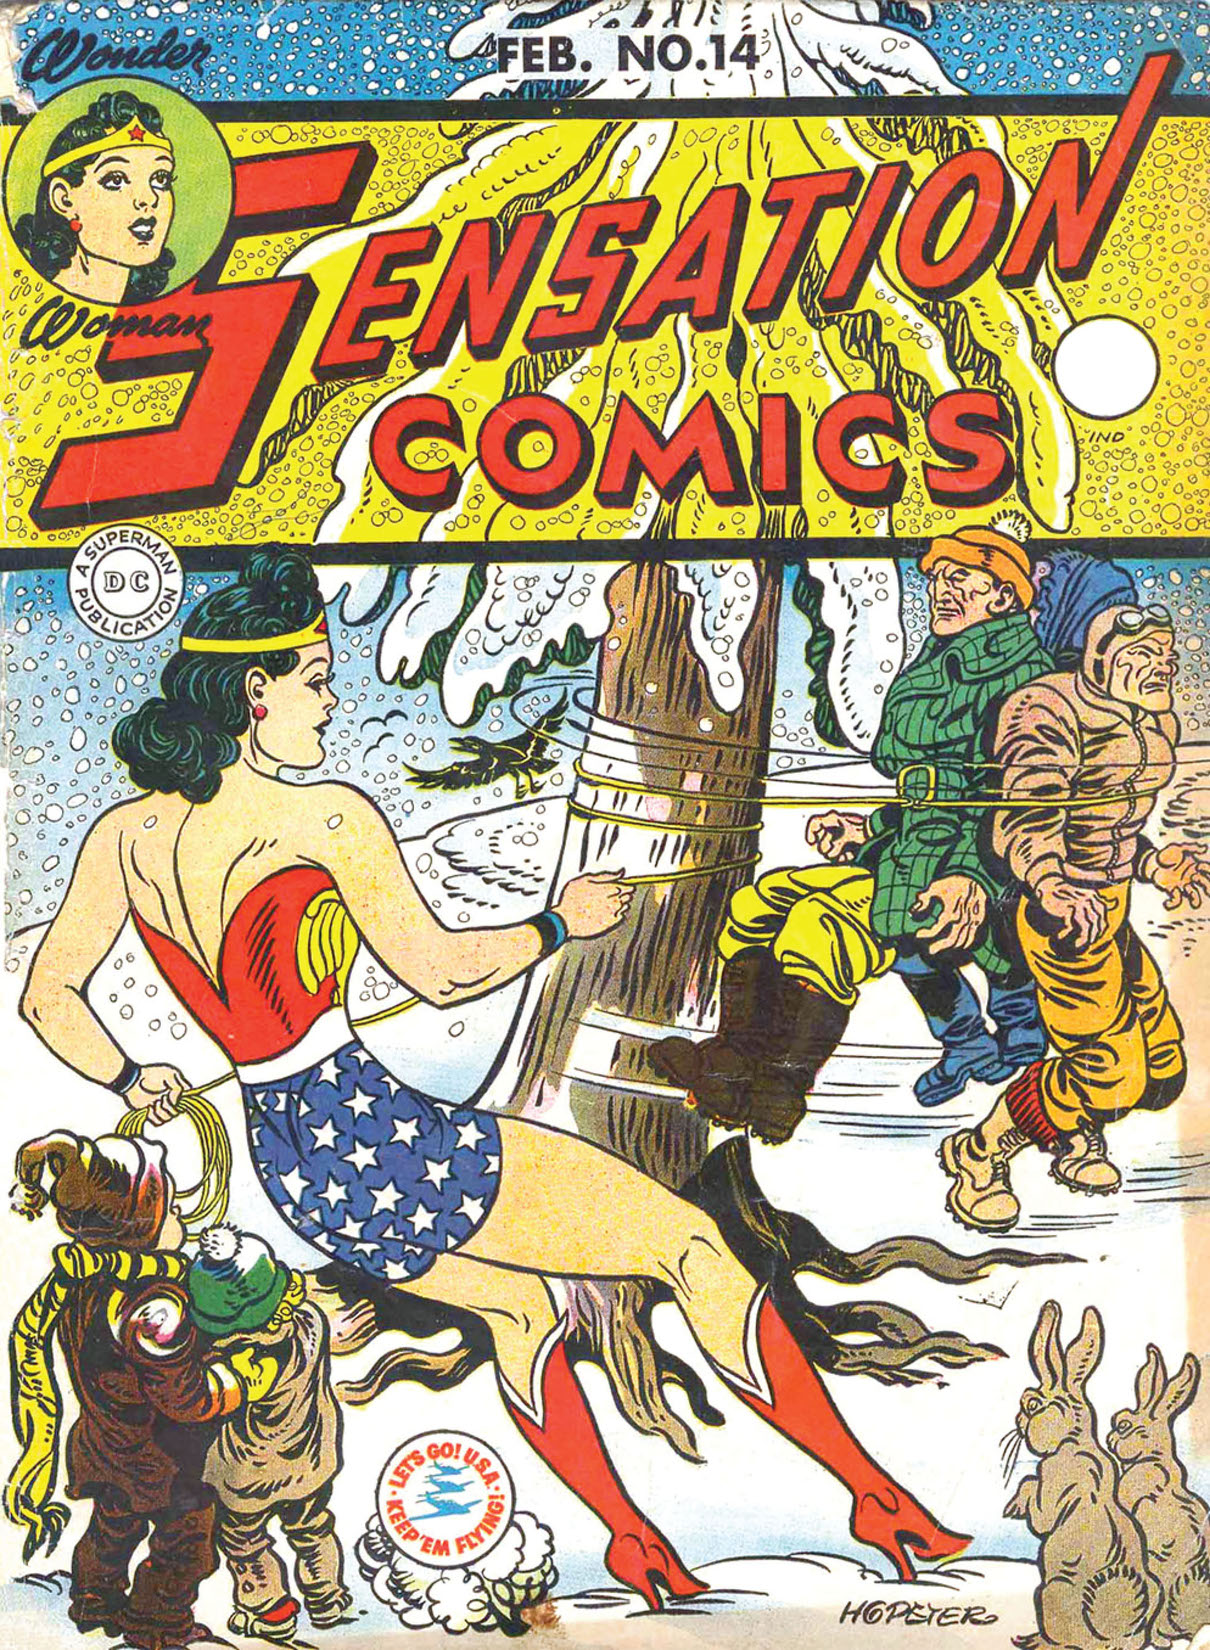 Sensation Comics #14 preview images